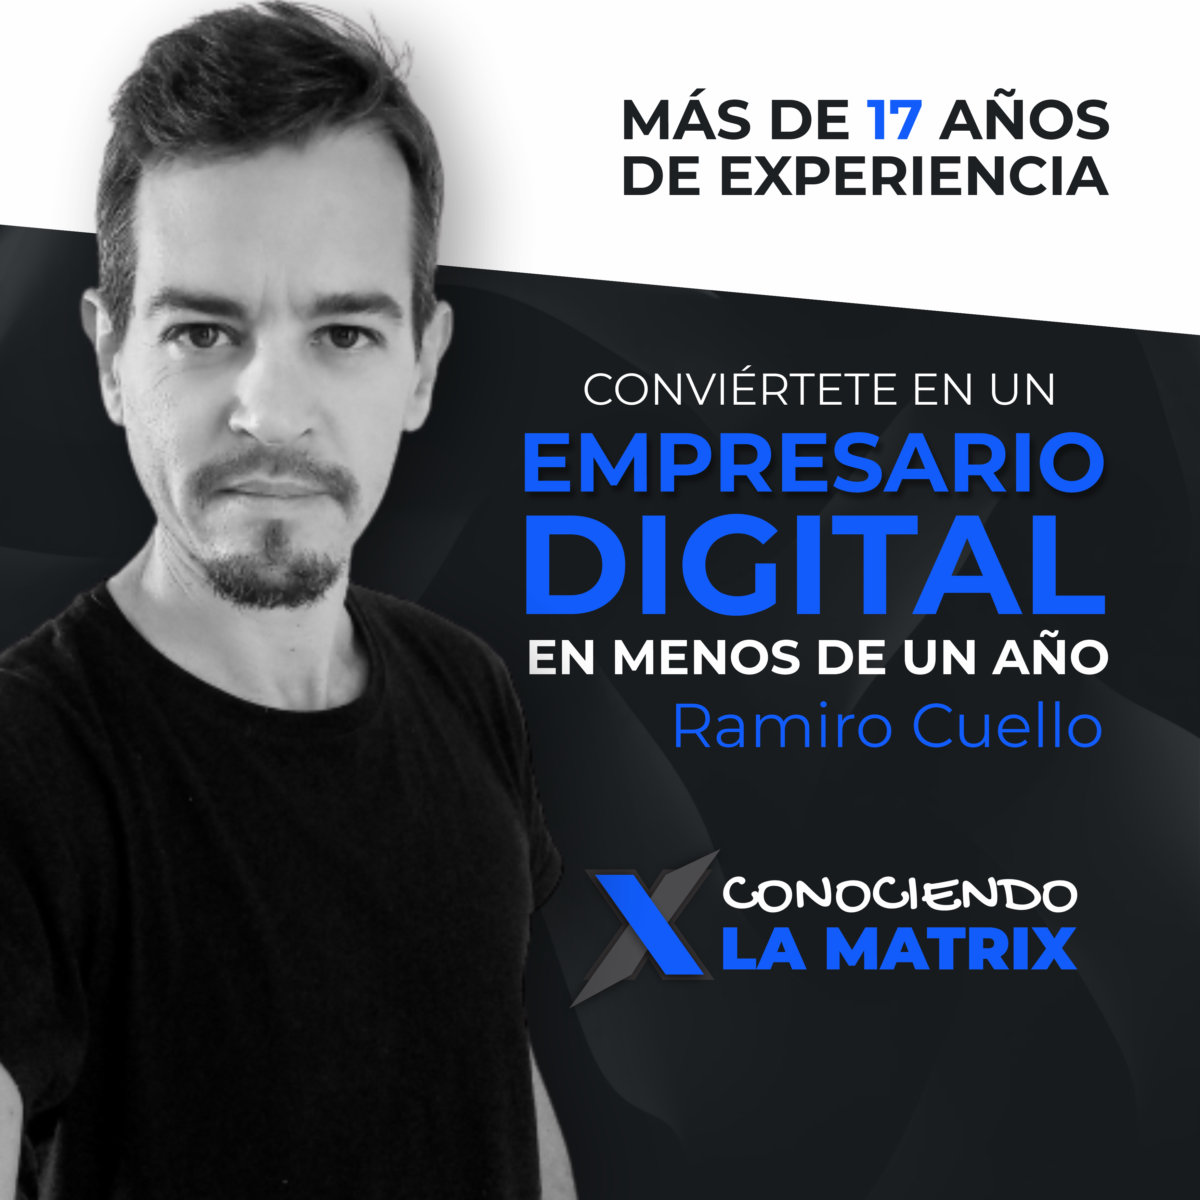 Curso de Marketing Digital de Ramiro Cuello